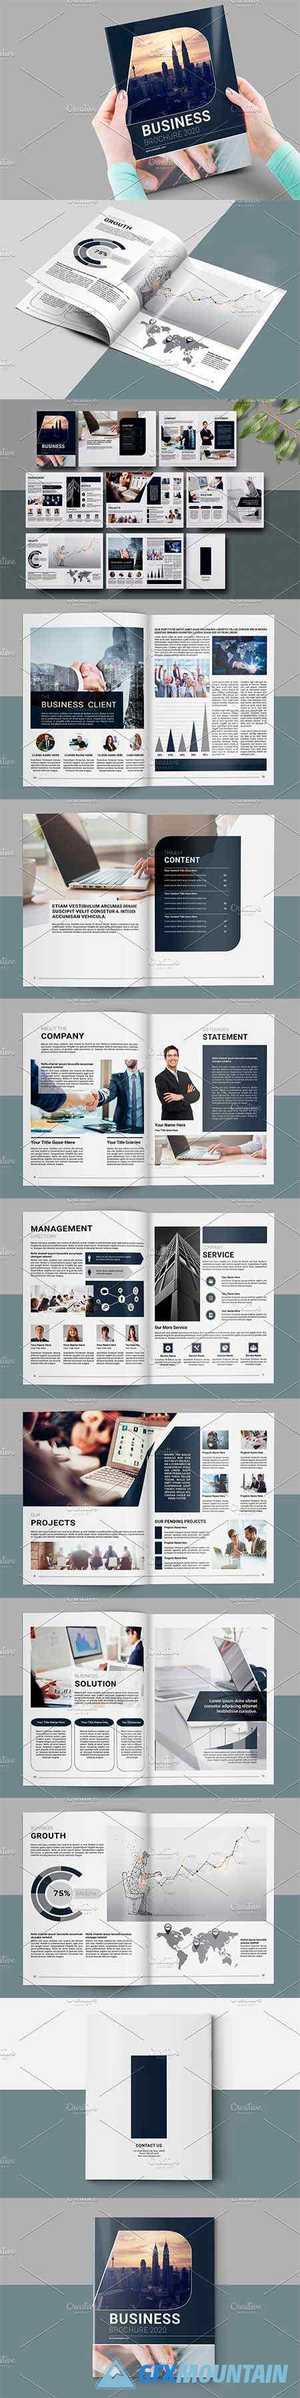 Business Brochure - 16 Page V983 4442480